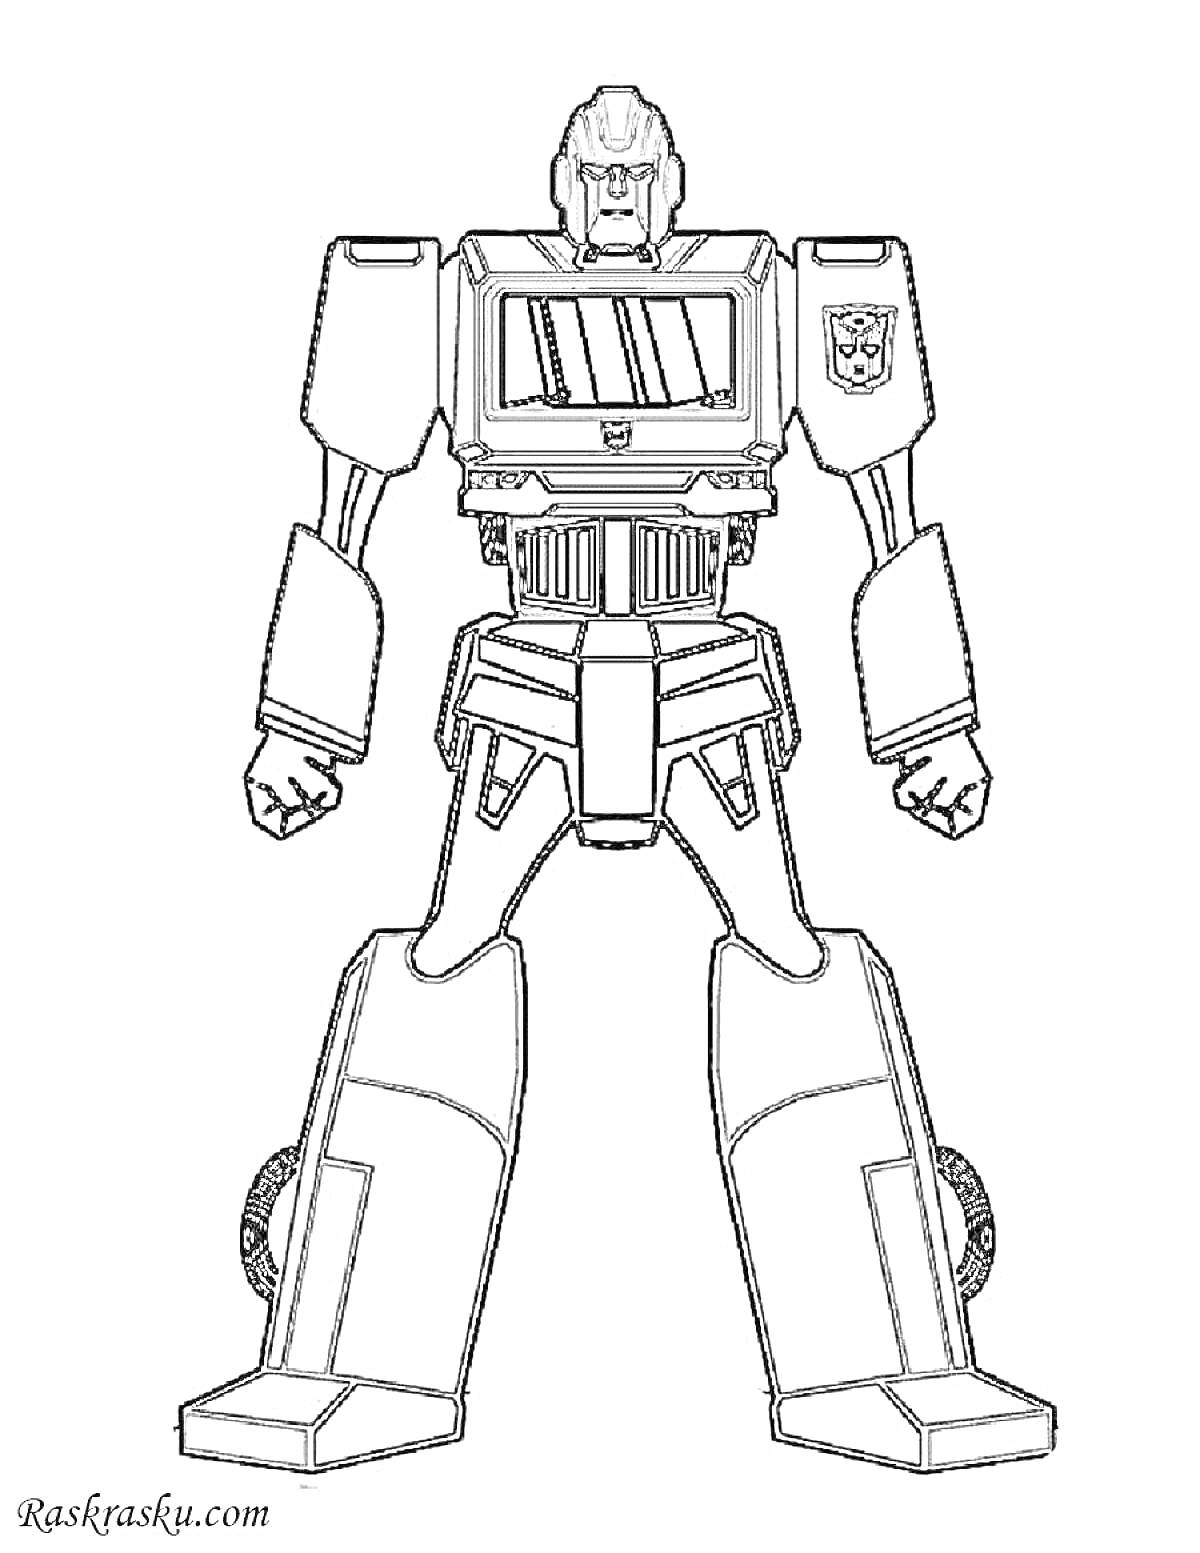 Раскраска Робот с эмблемой, стоящий в полной боевой готовности